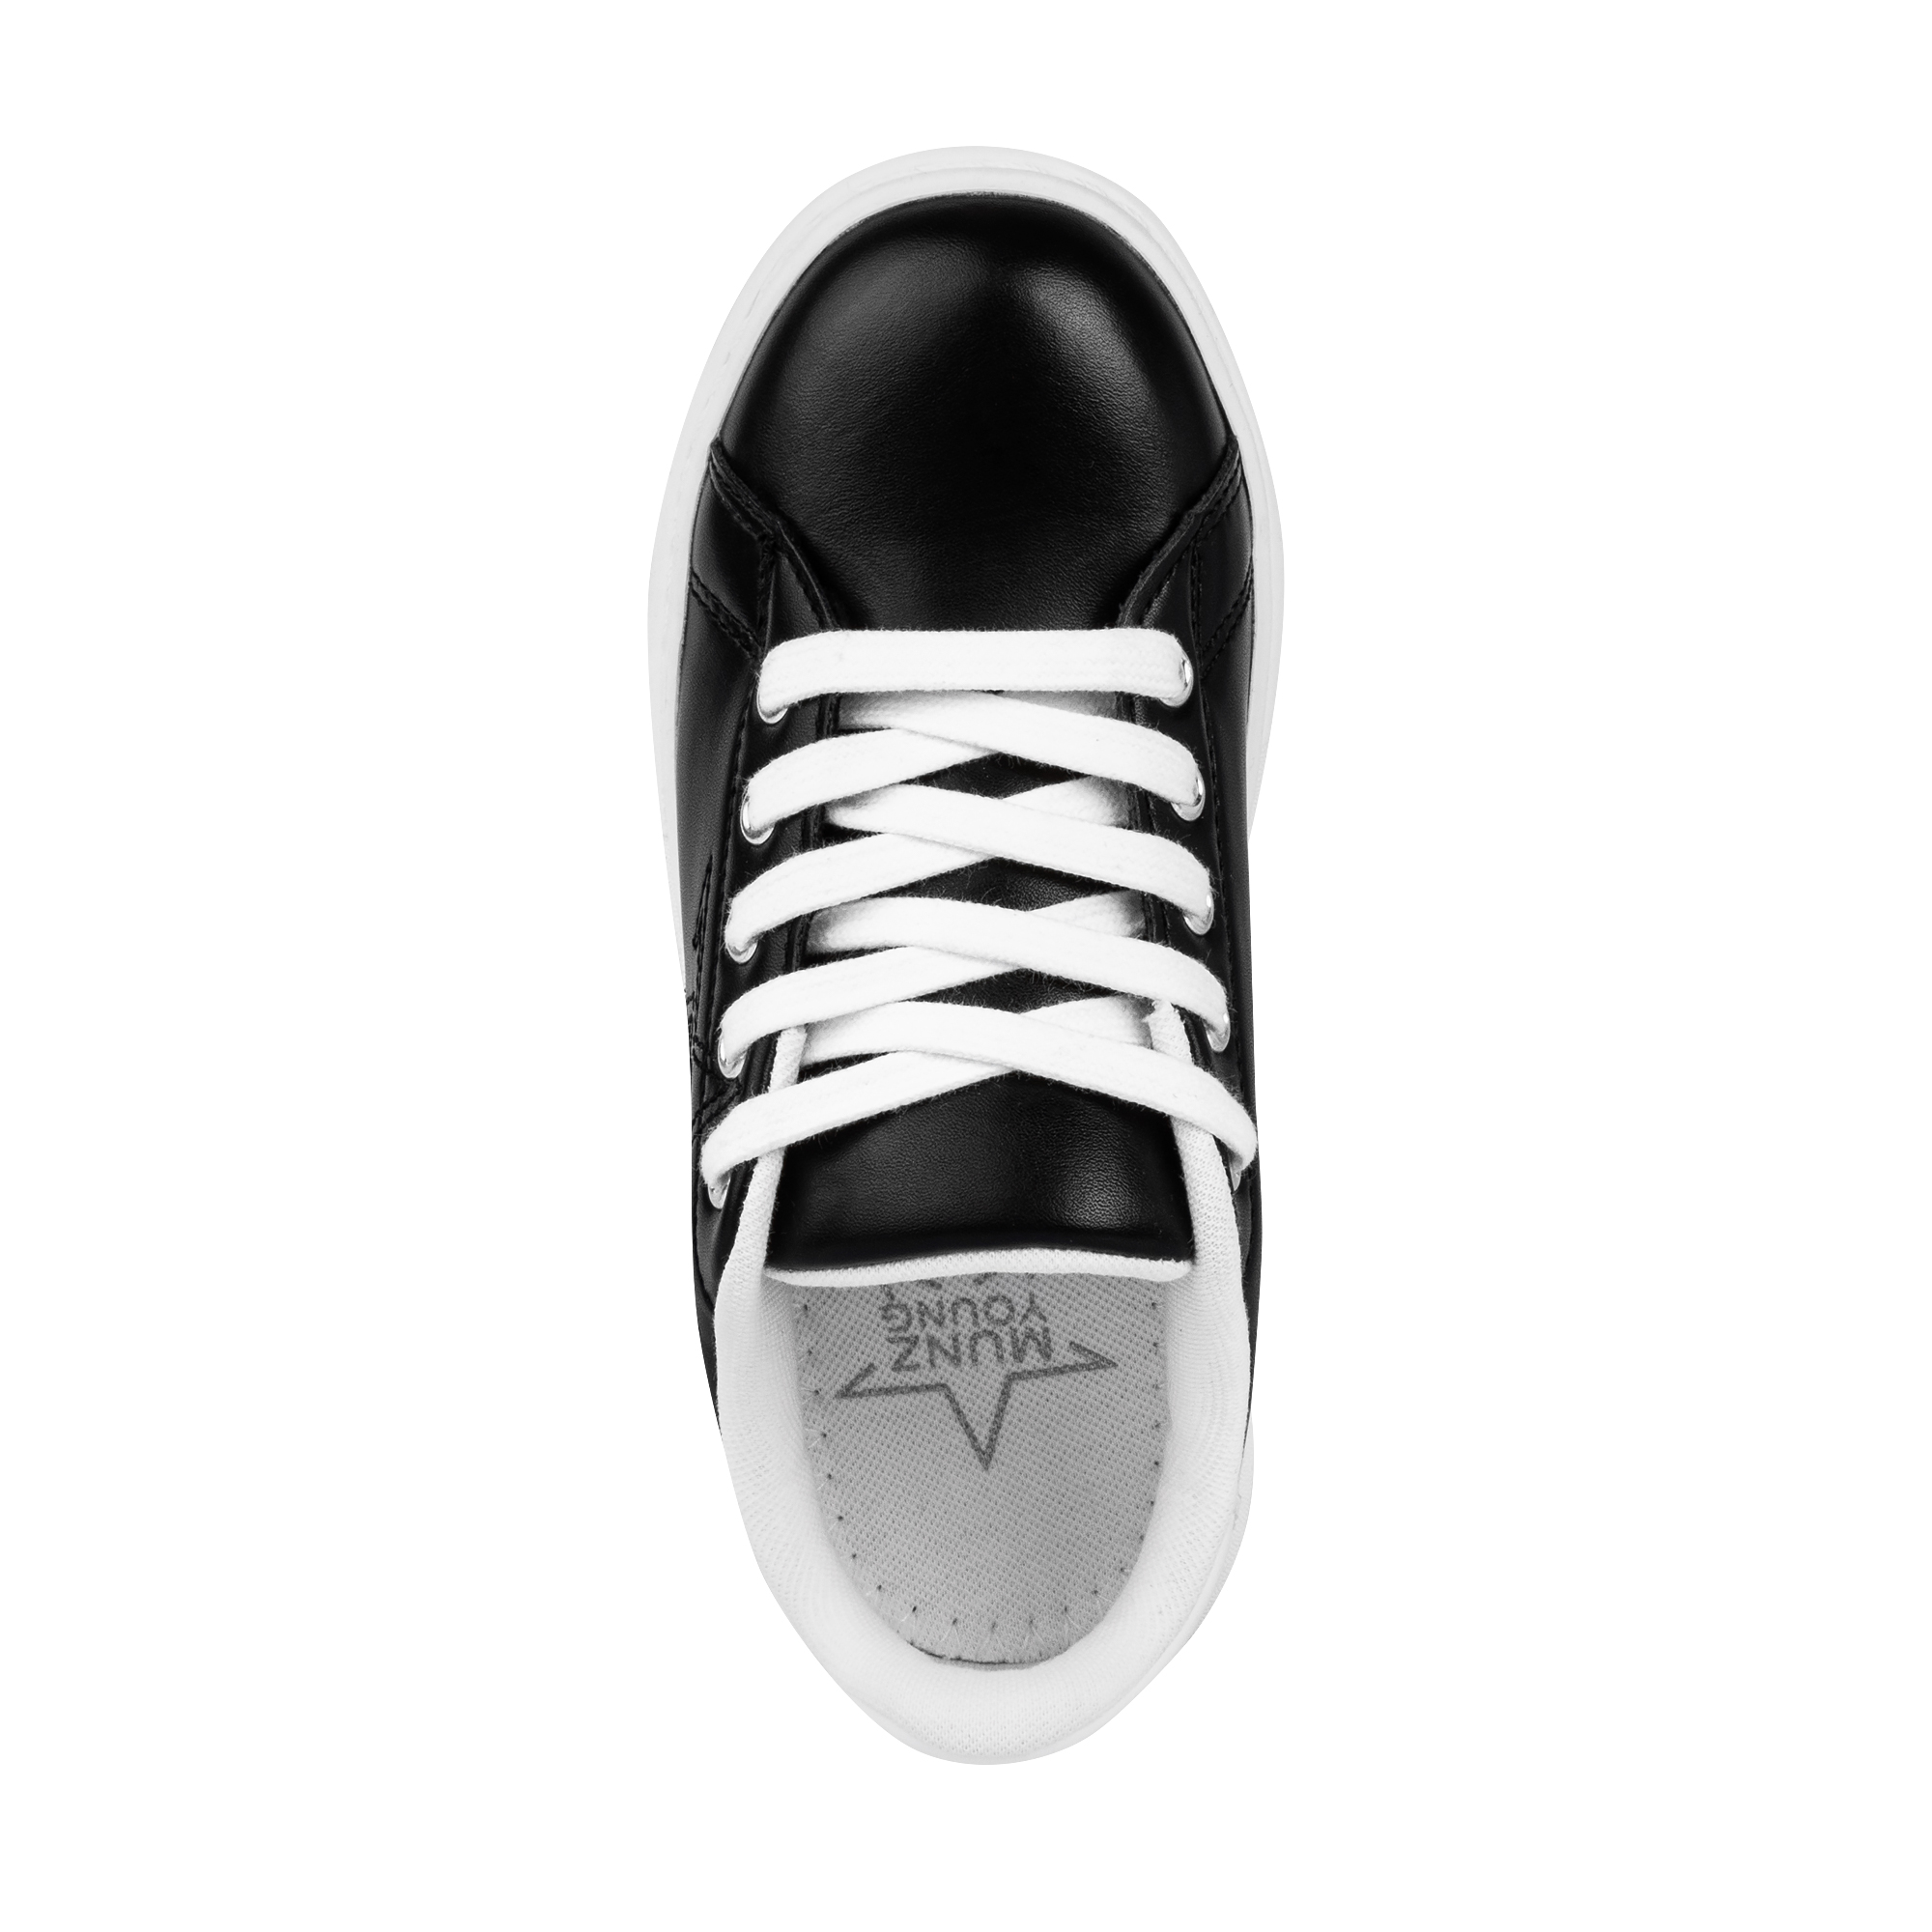 Обувь для девочек MUNZ YOUNG 117-015A-2602, цвет черный, размер 33 - фото 5